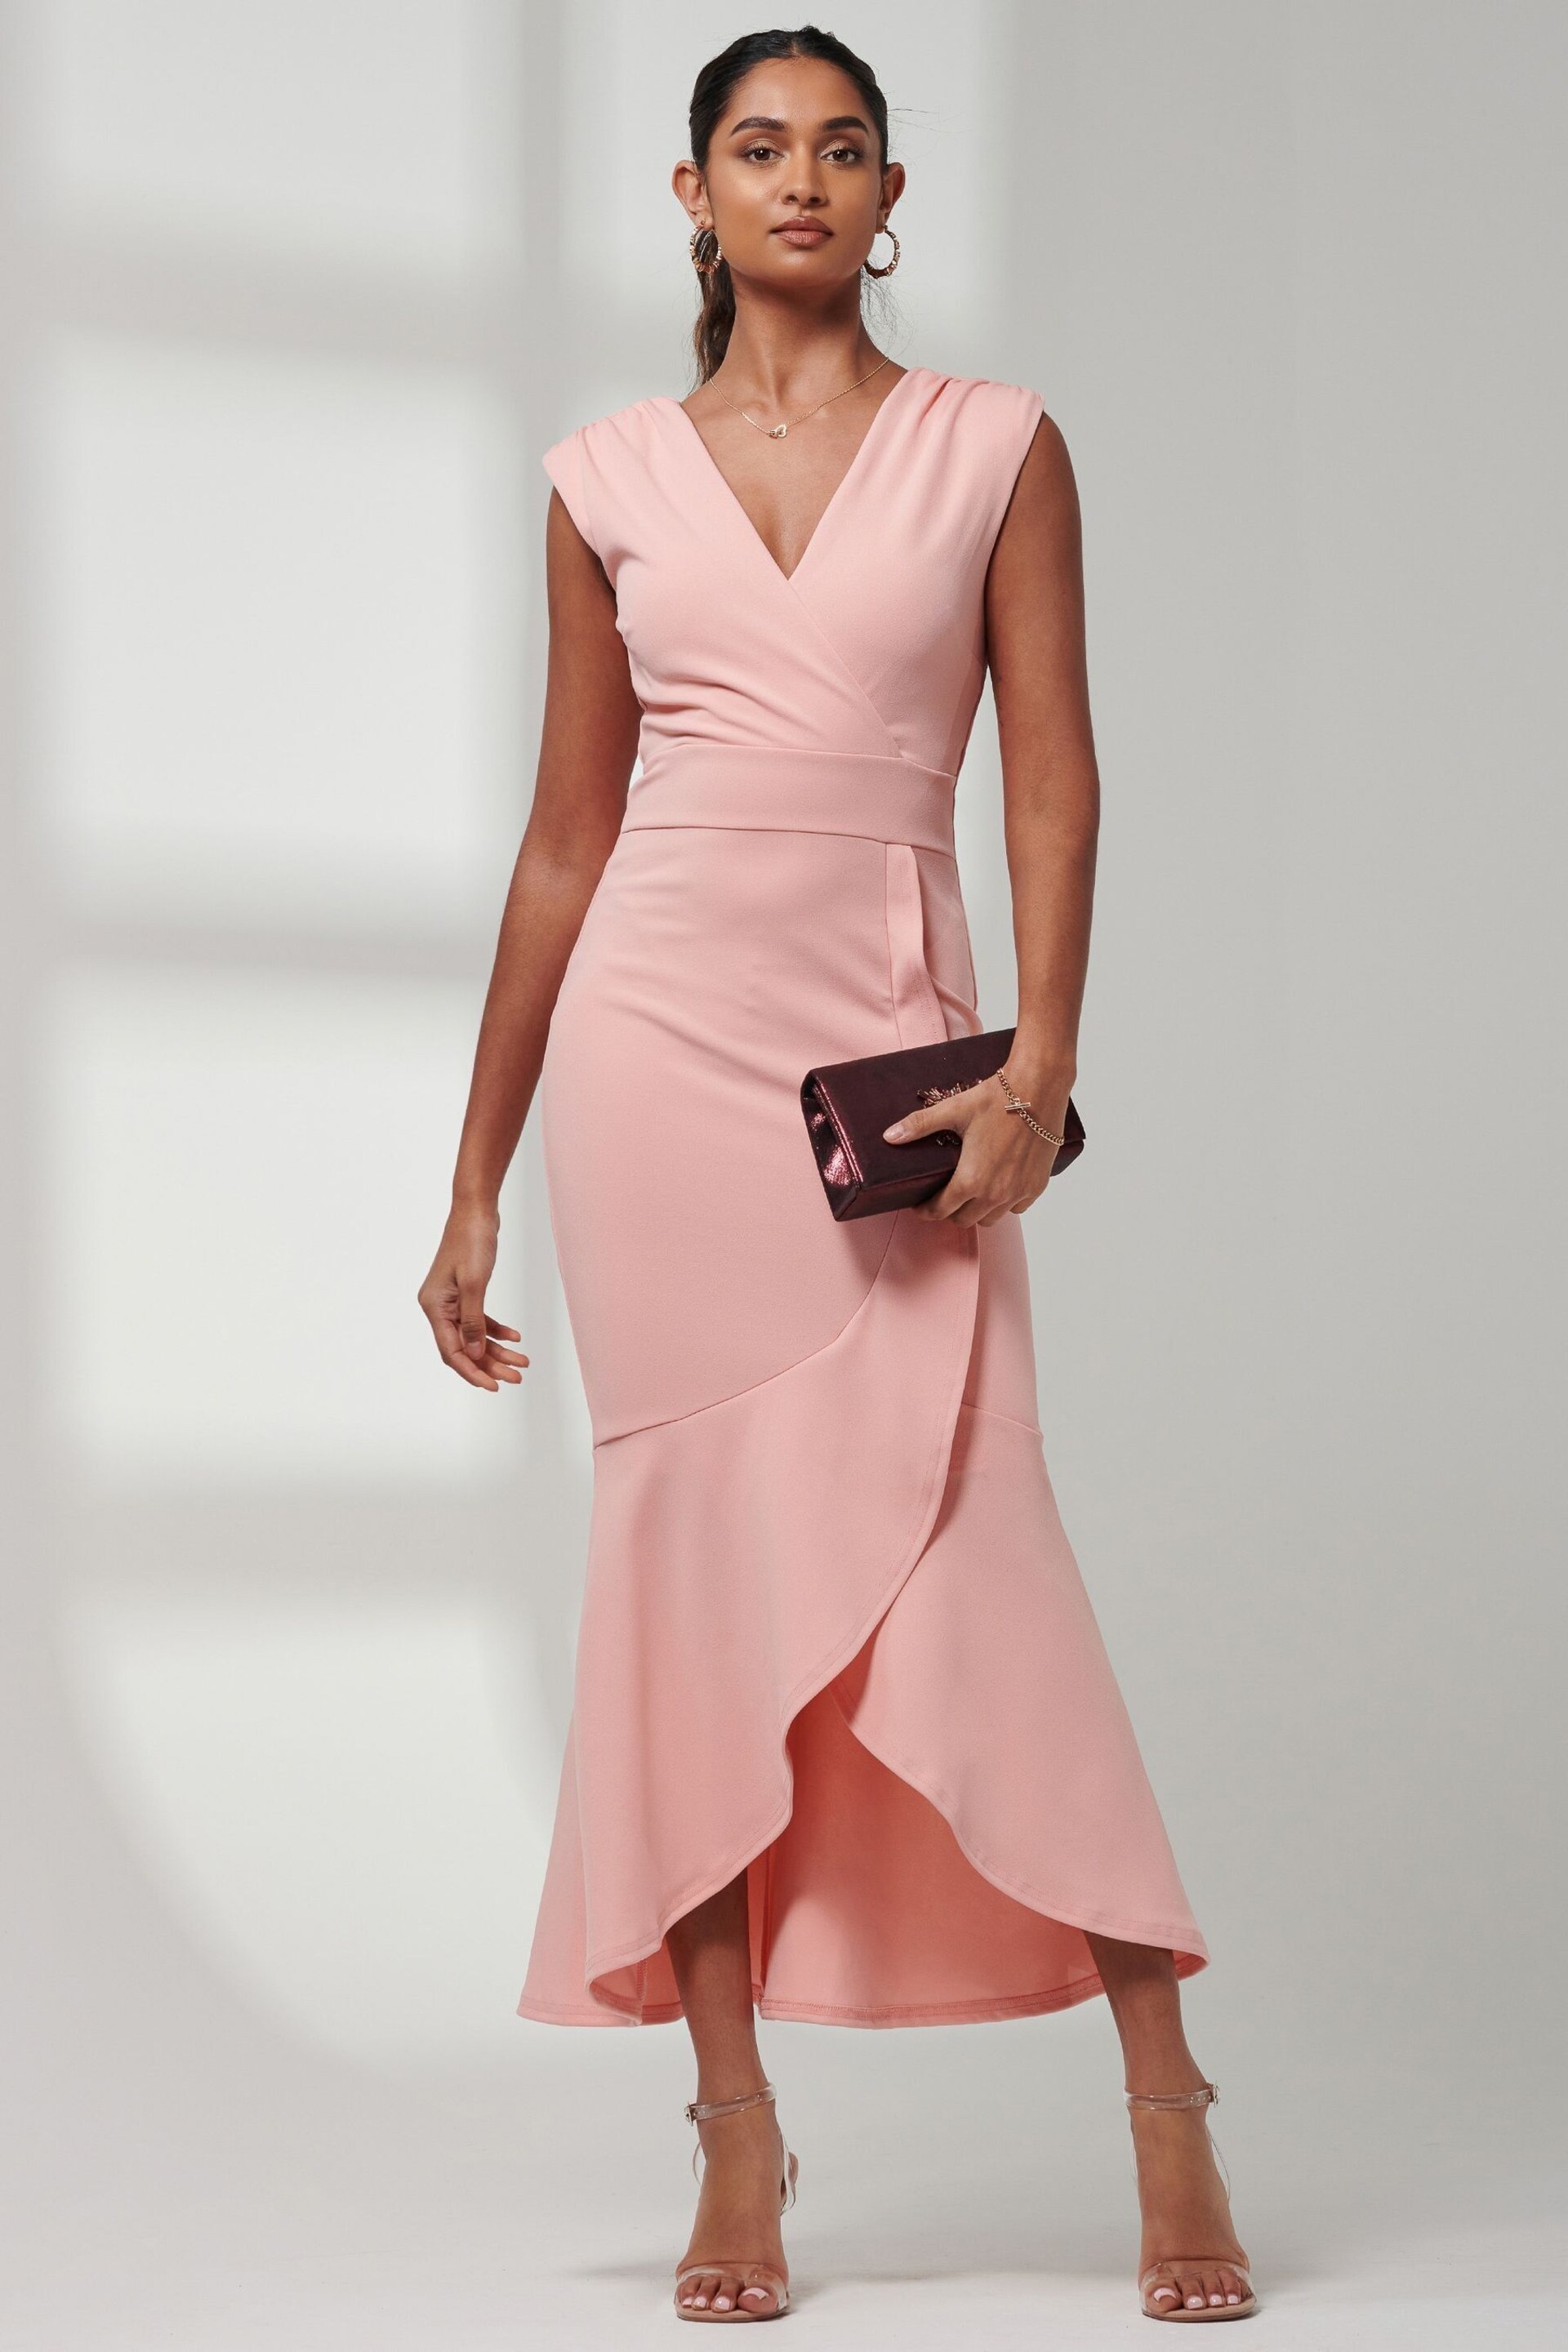 Jolie Moi Pink Mabruka Frill Fishtail Maxi Dress - Image 1 of 6